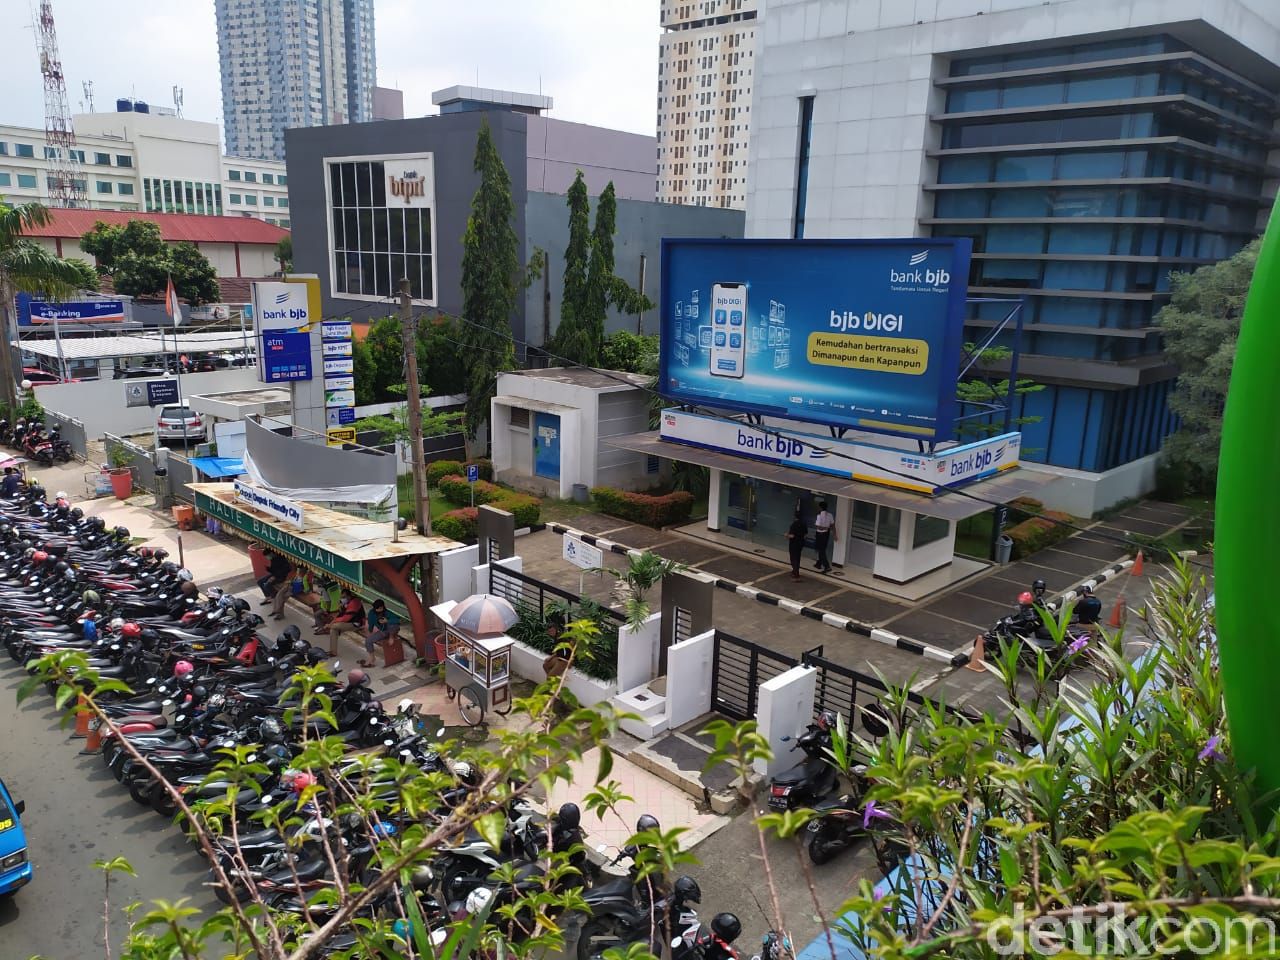 JPO Kantor Wali Kota Depok terhalang parkir motor-mobil. (Ajat/detikcom)